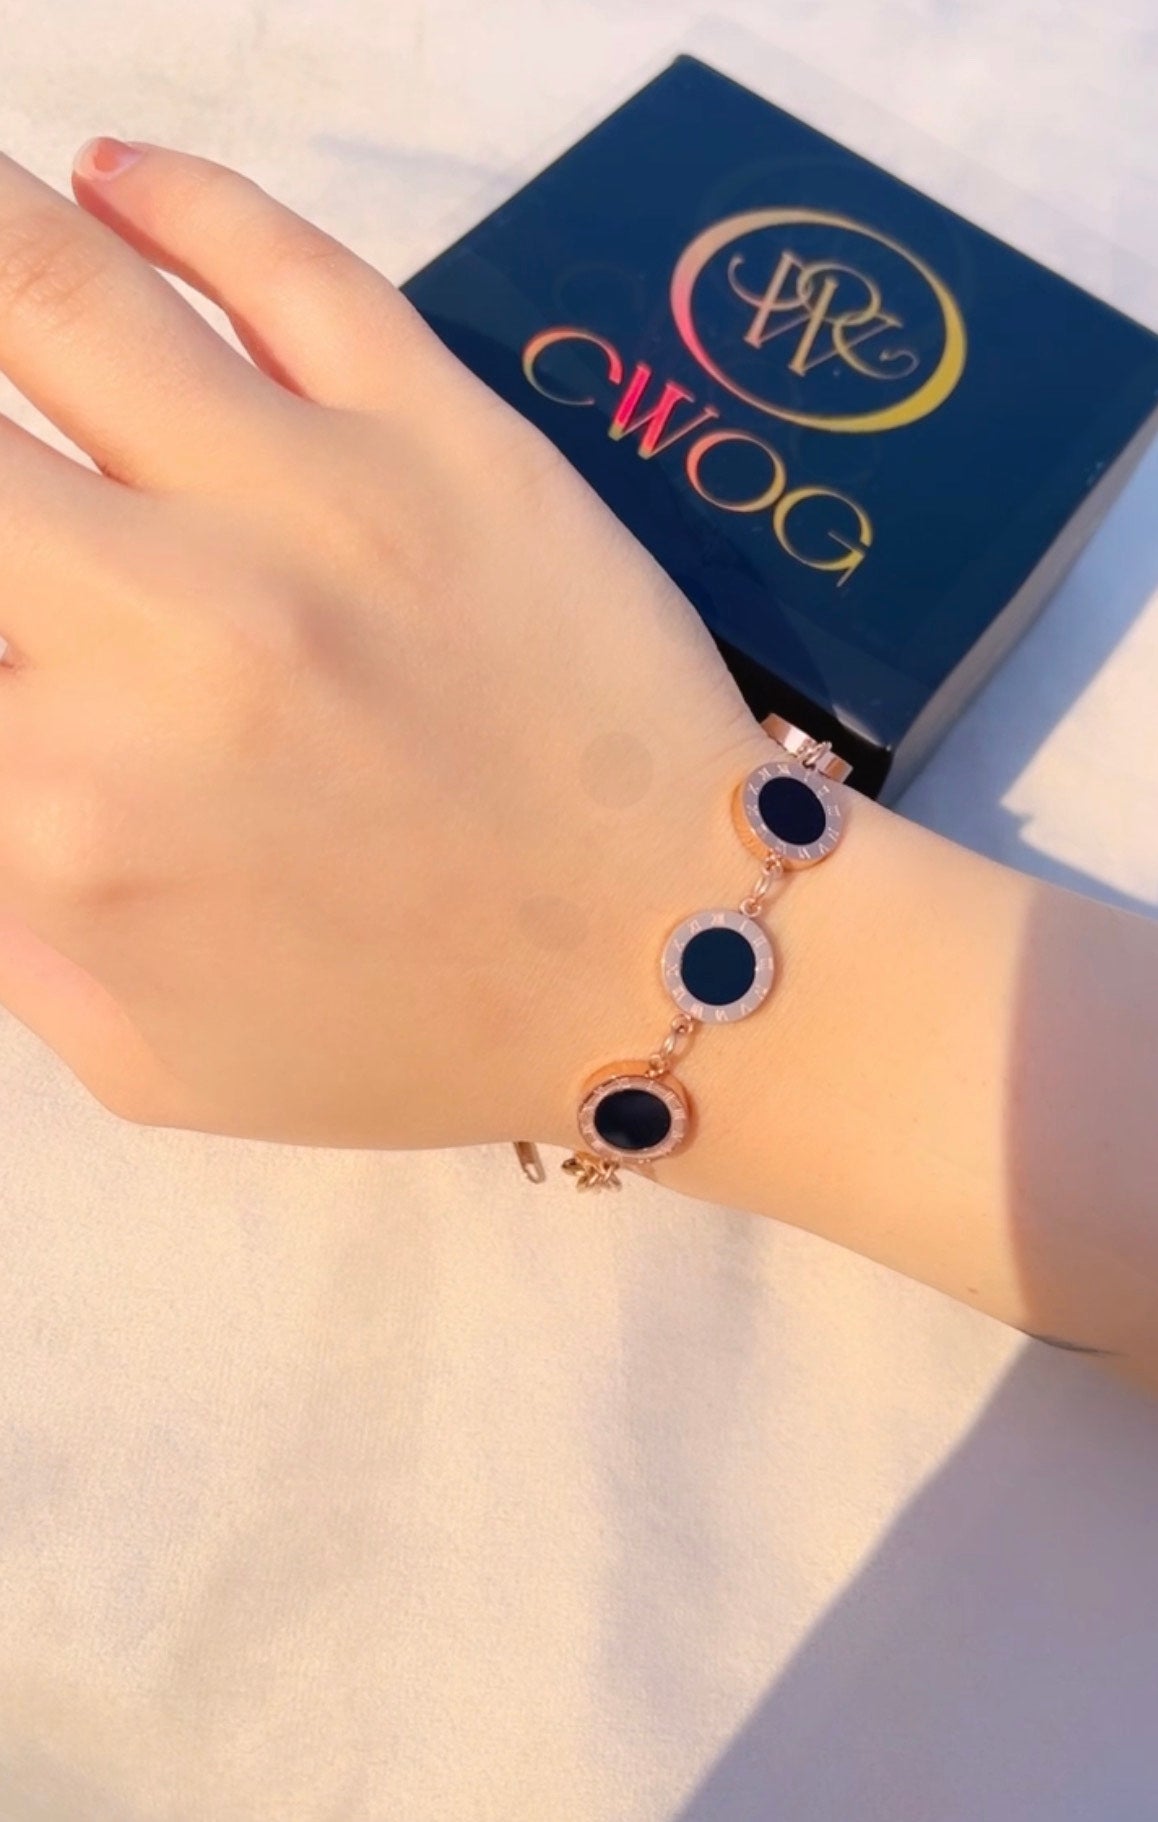 All black bracelet